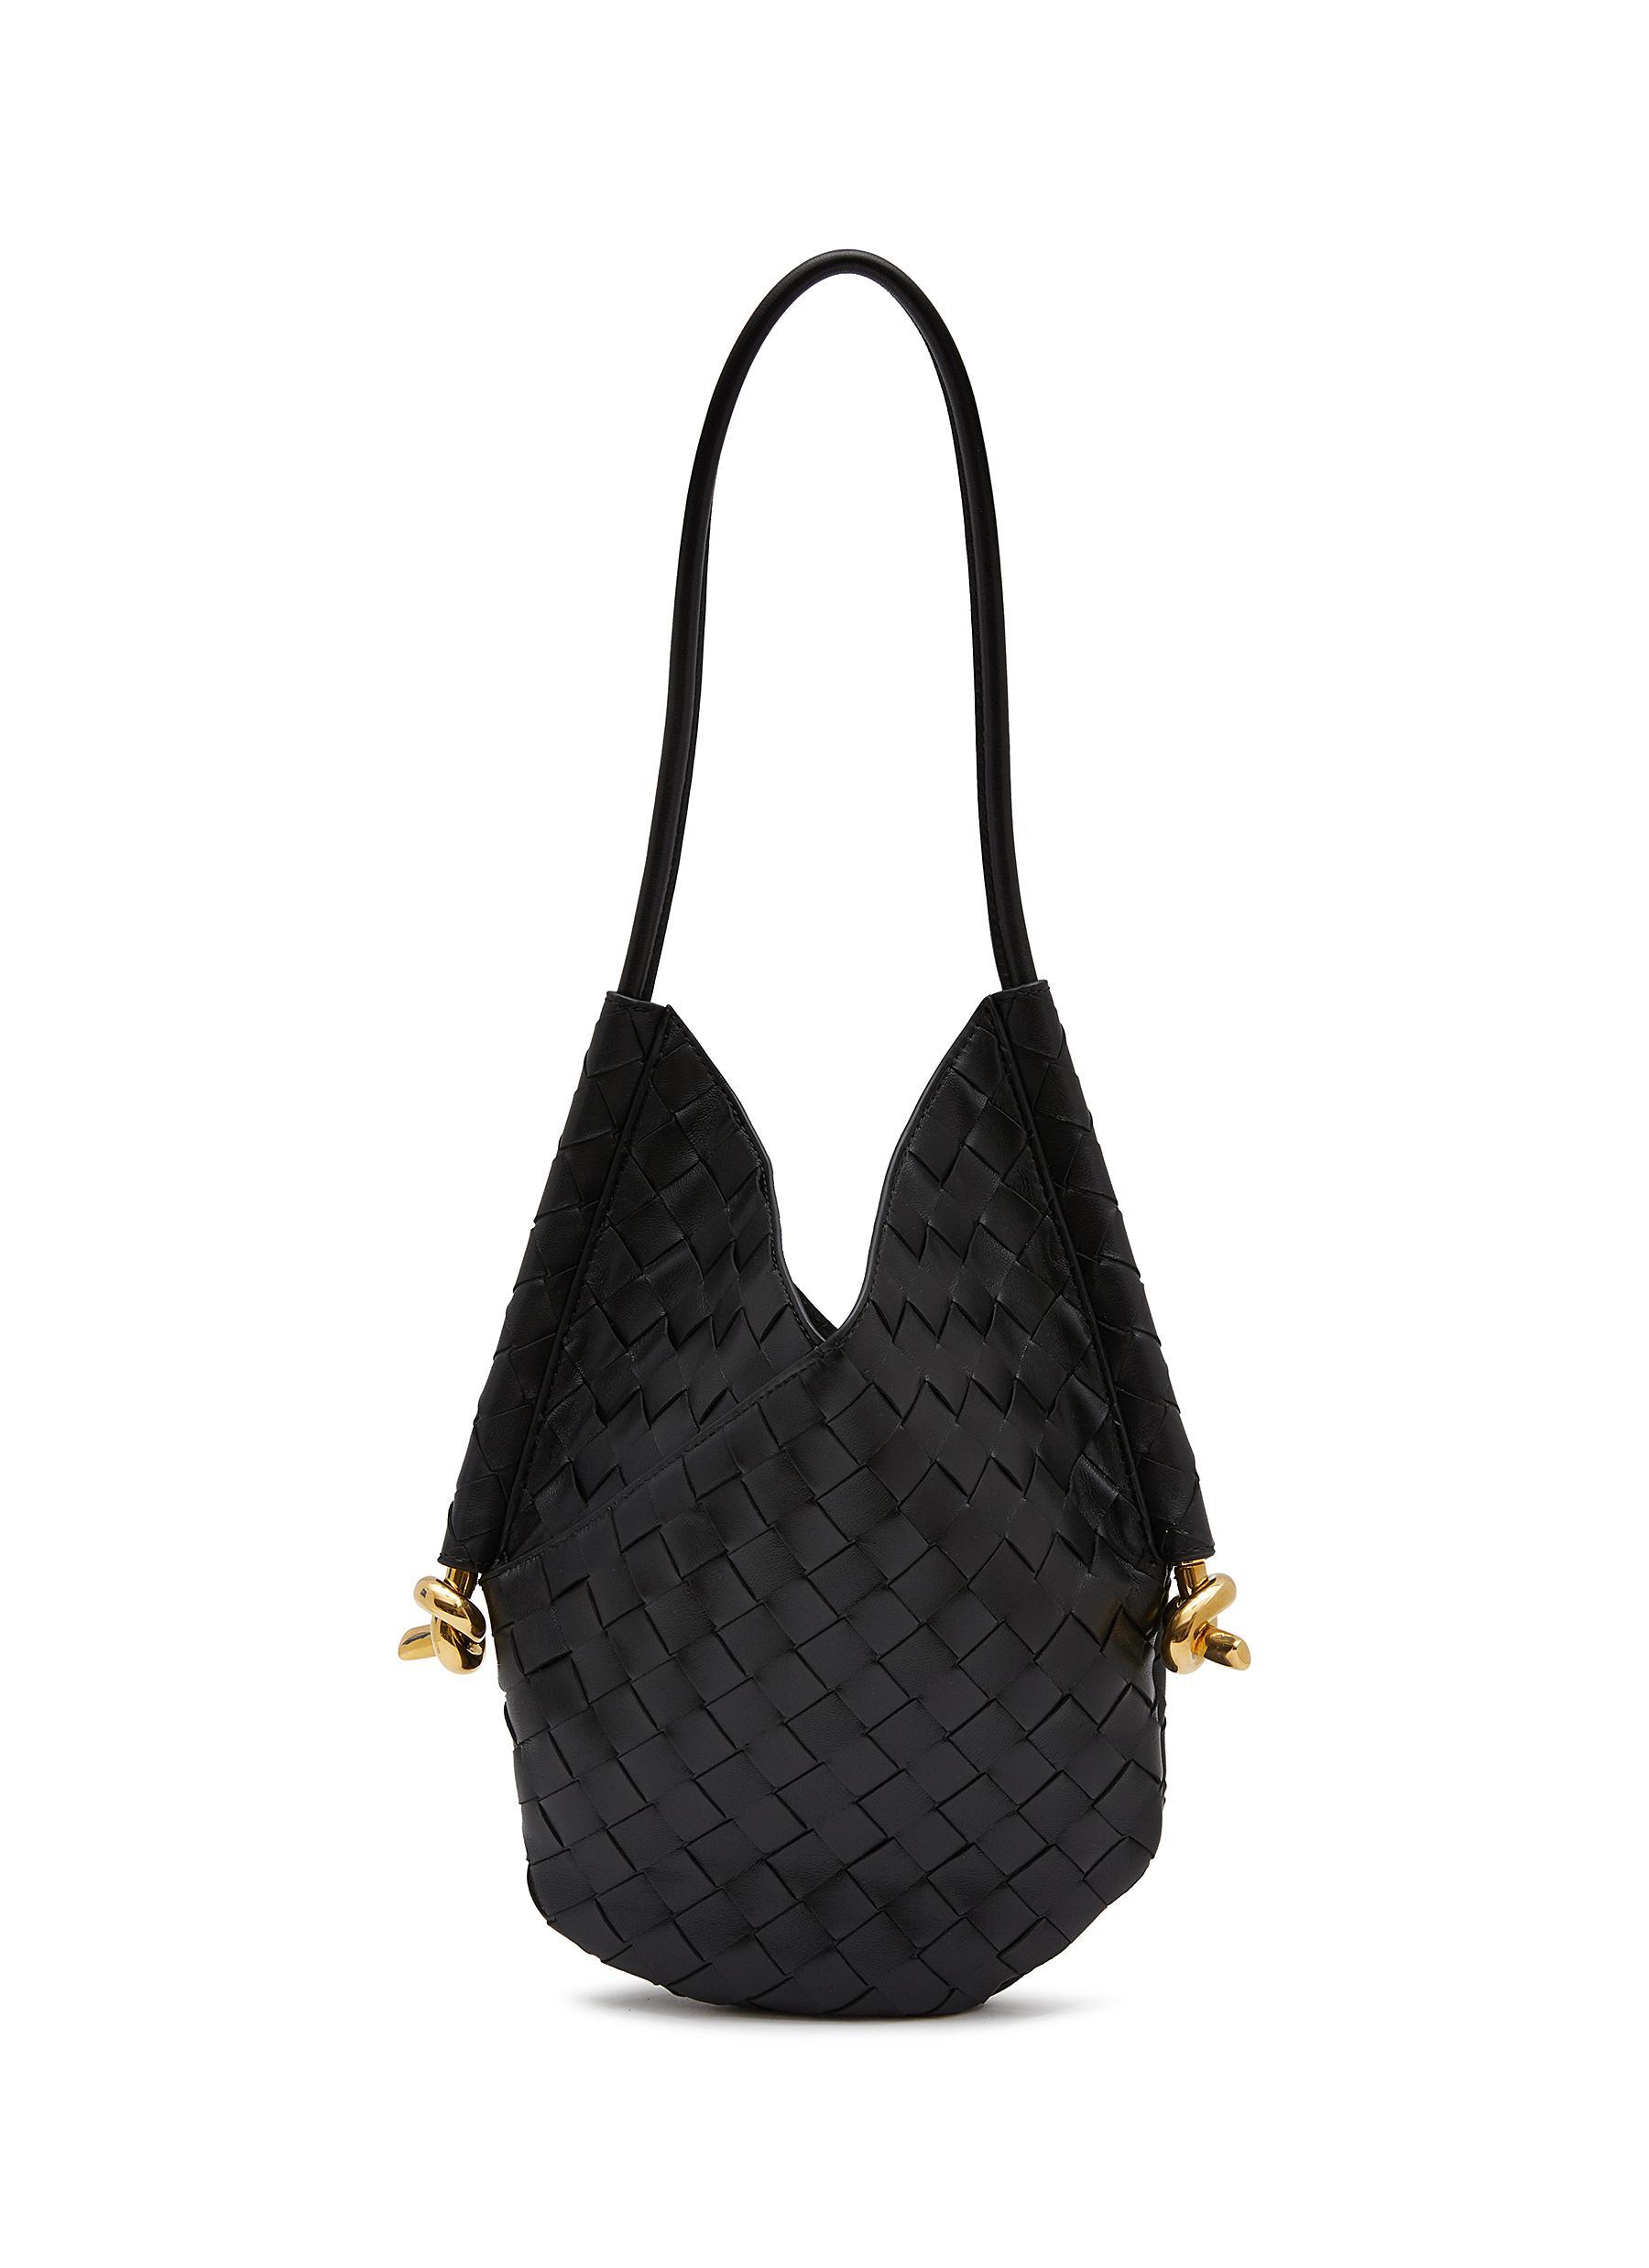 Bottega Veneta Small Solstice Intrecciato Leather Shoulder Bag in Black ...